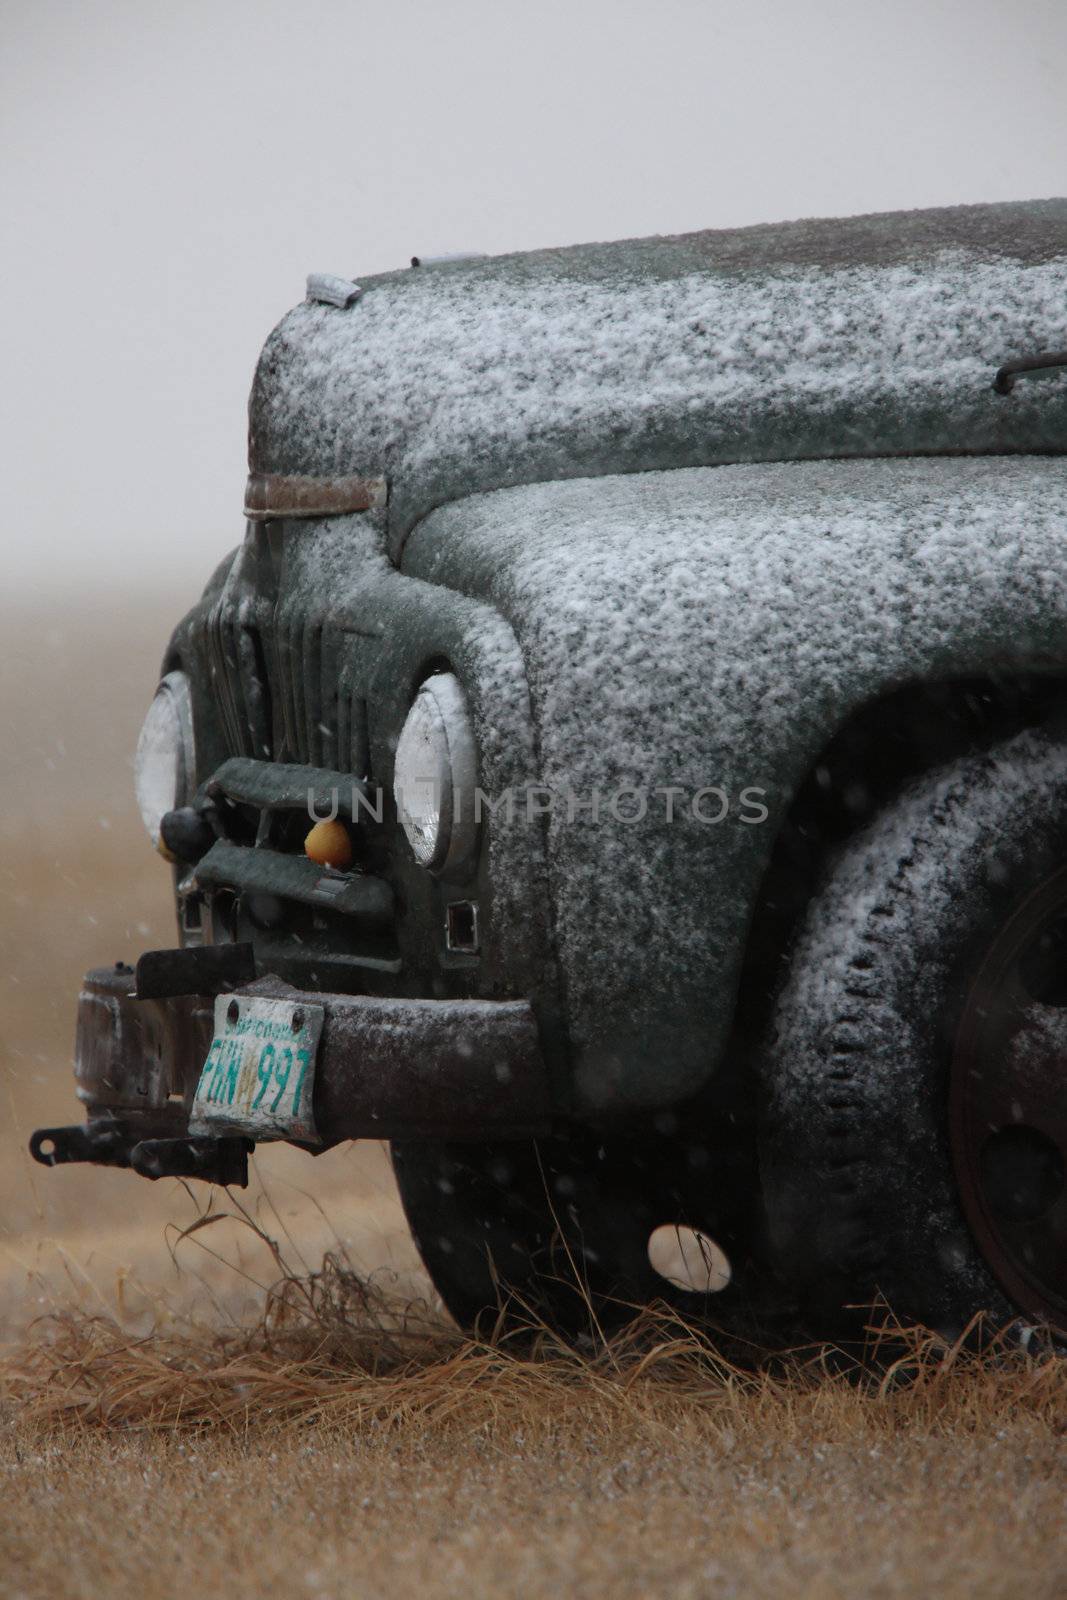 Old Vintage Truck in Winter Storm Saskatchewan